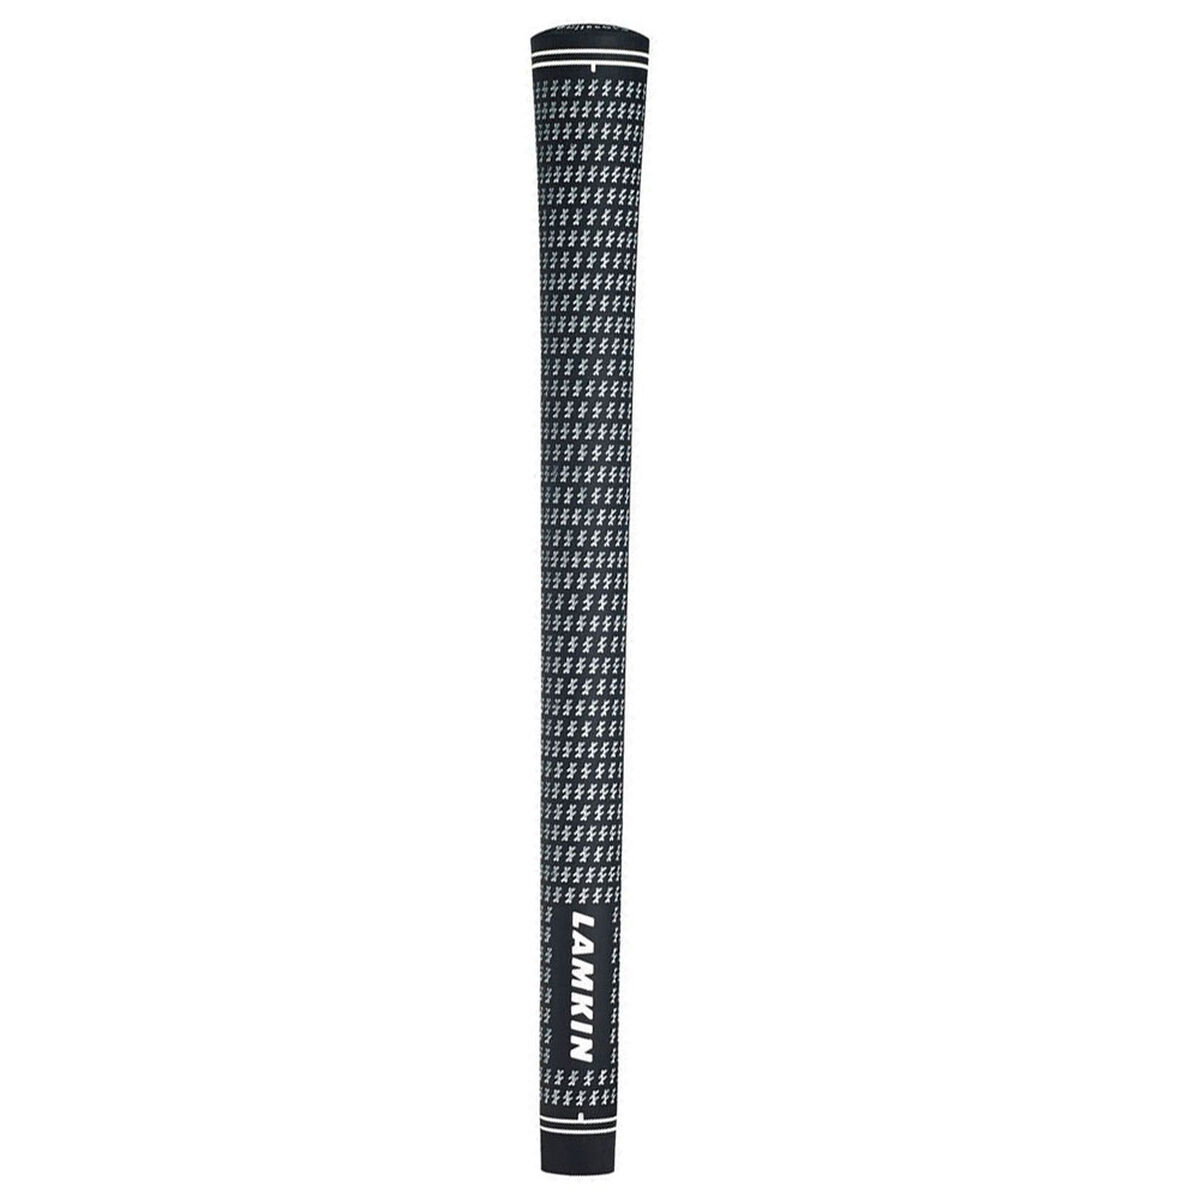 Lamkin Black and White Crossline Golf Grip, Size: midsize | American Golf von Lamkin